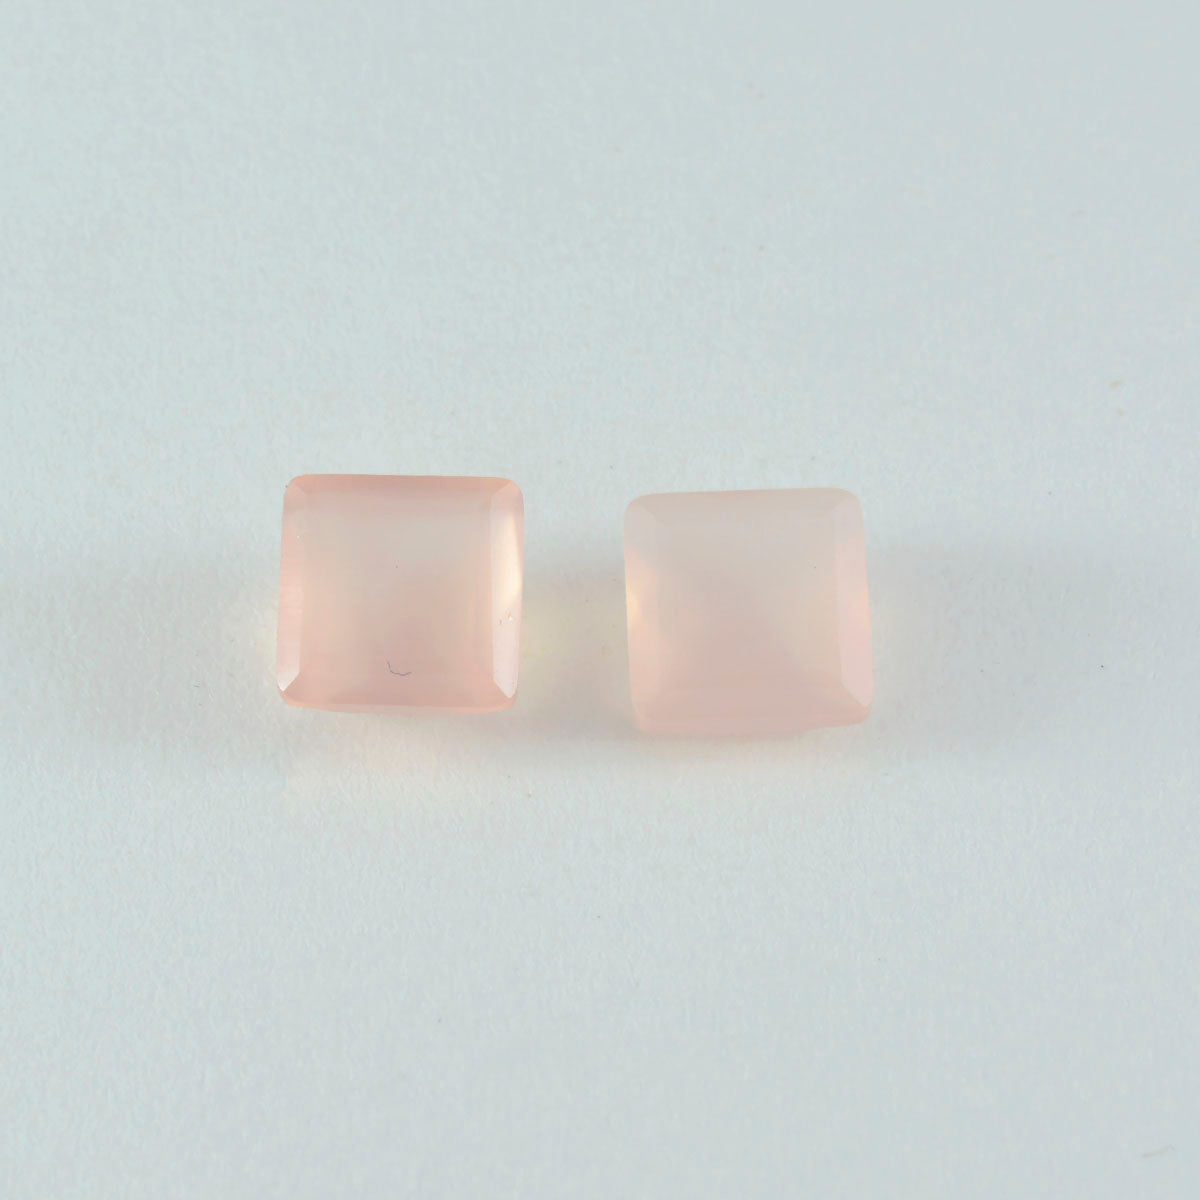 Riyogems 1 Stück rosafarbener Rosenquarz, facettiert, 13 x 13 mm, quadratische Form, loser Edelstein von hervorragender Qualität